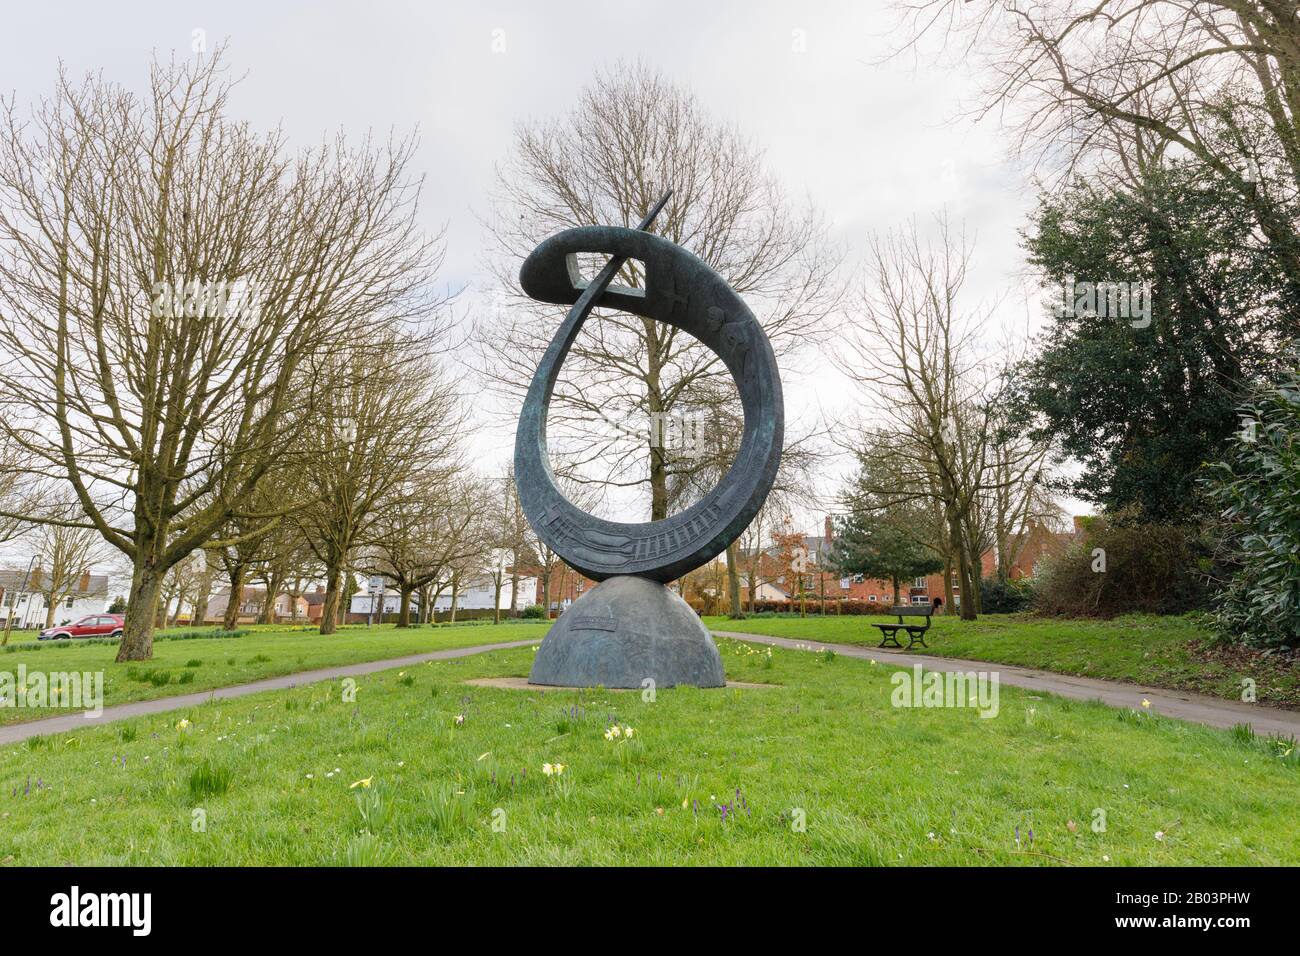 Rugby, Großbritannien, Februar 2020: Sir Frank Whittle Memorial Sculpture von Stephen Broadbent steht im öffentlichen Raum Chestnut Fields, umgeben von reifen Bäumen. Stockfoto